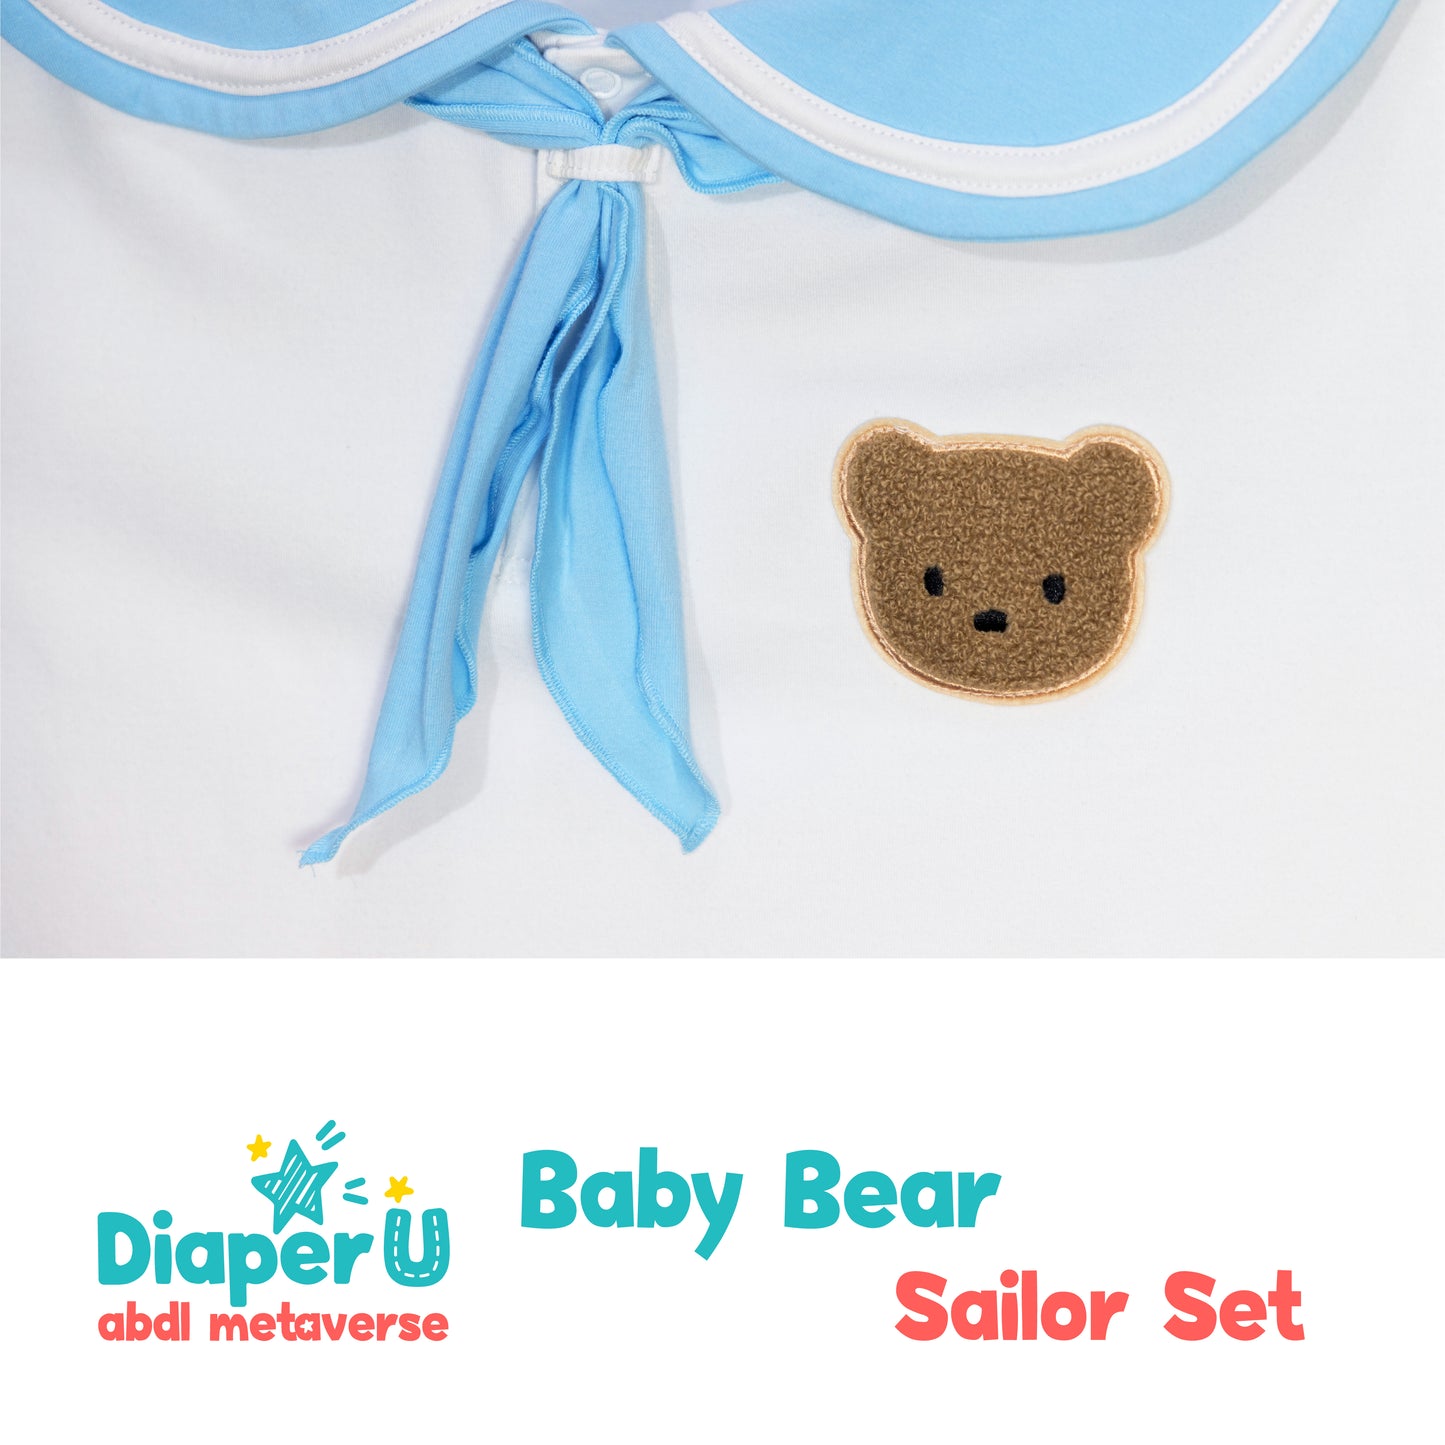 Baby Bear Sailor Play Shirt